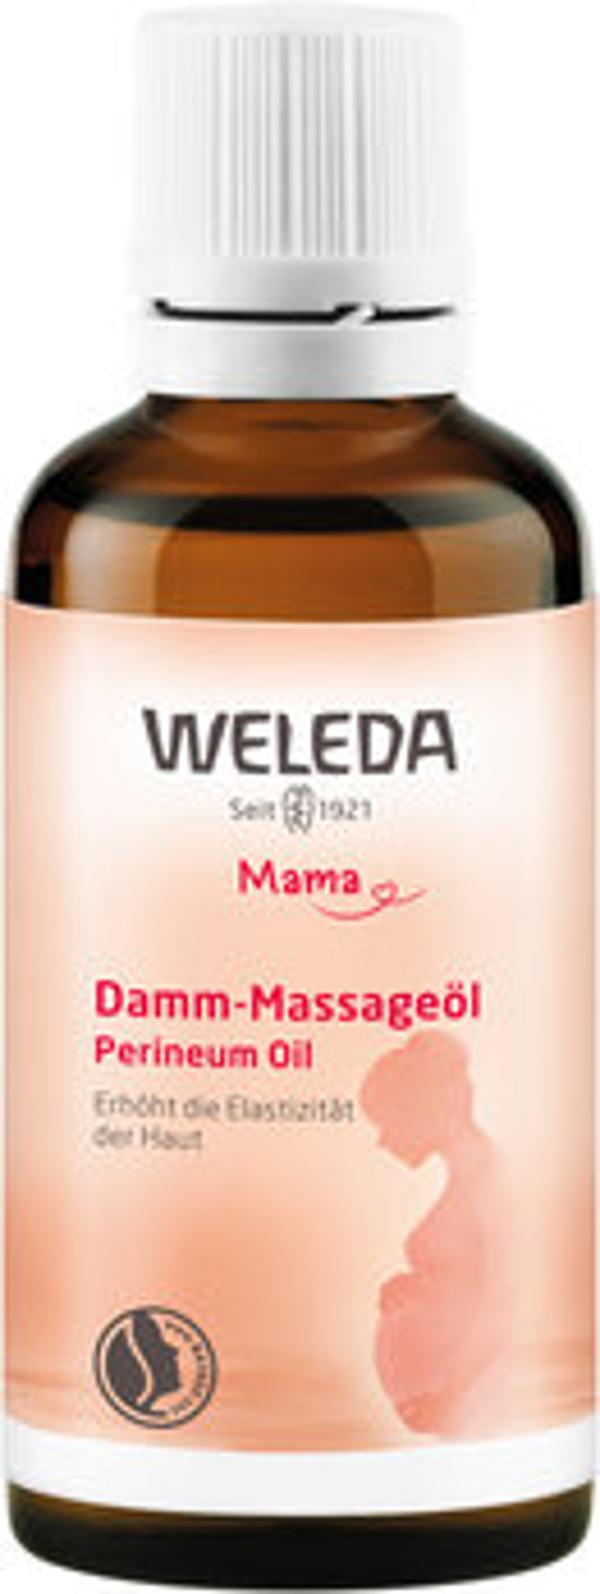 Produktfoto zu Damm Massageöl, 50 ml